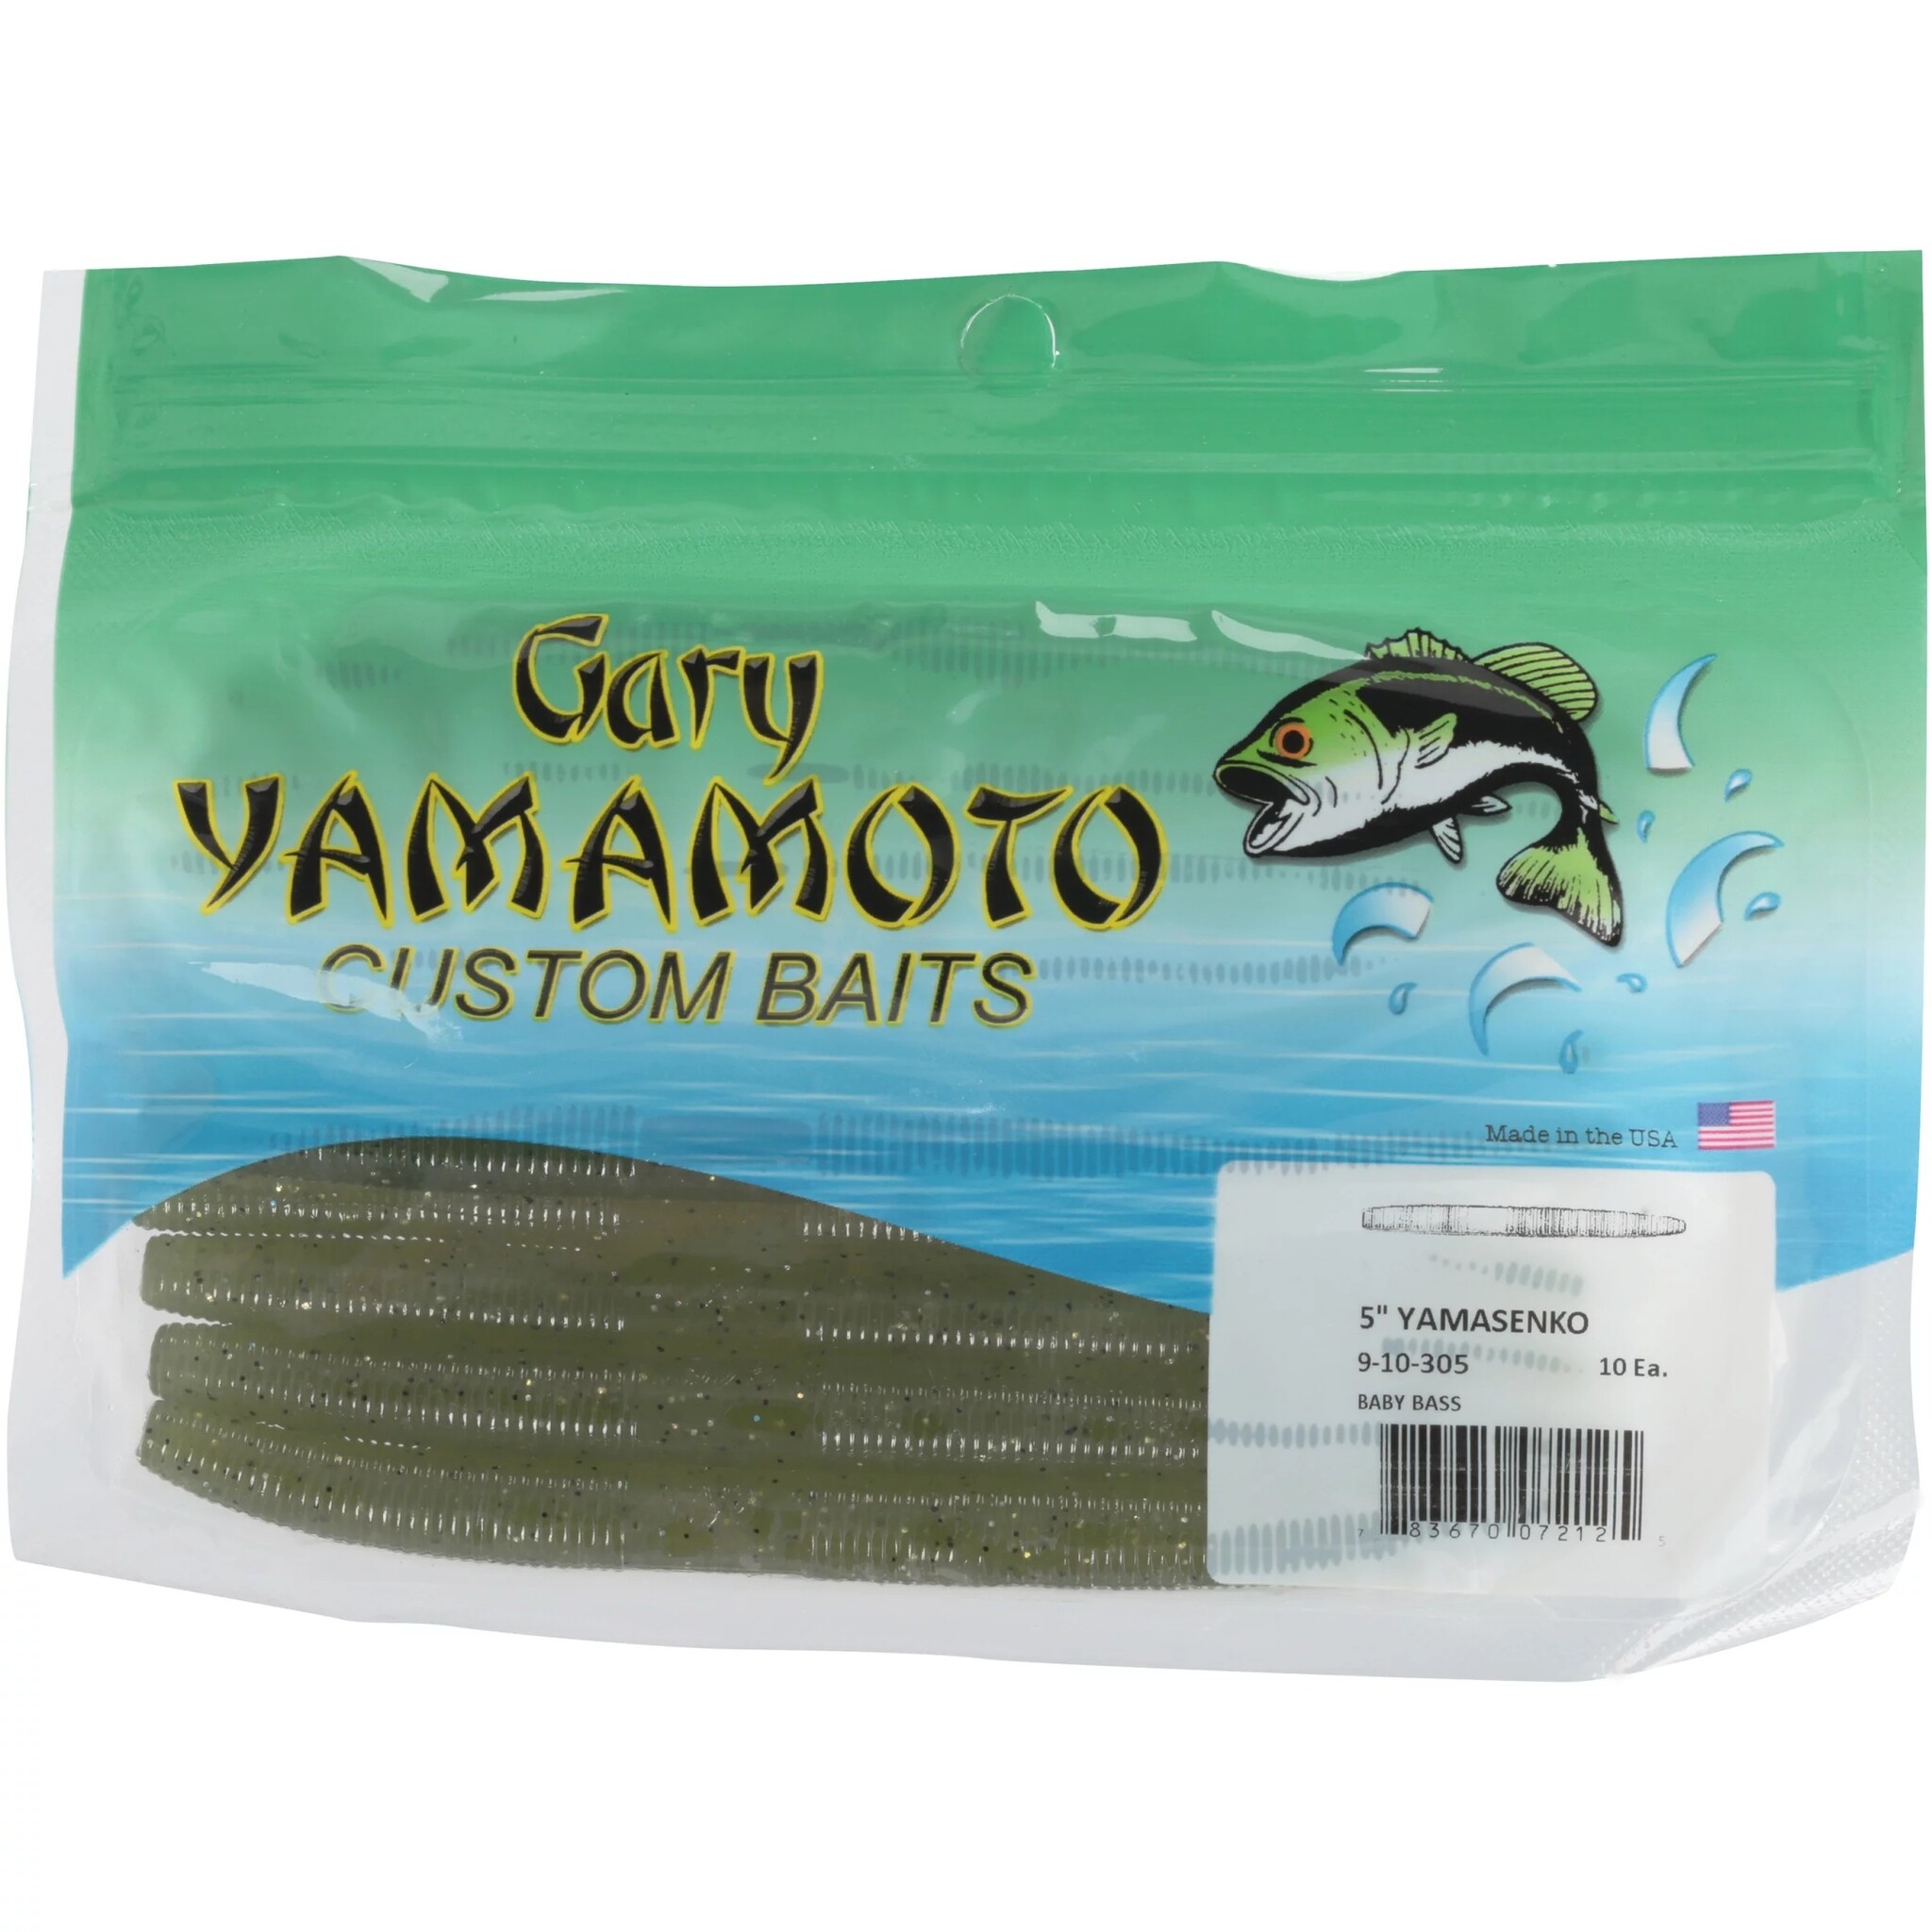 Gary Yamamoto Custom Baits - OutfitterSSM